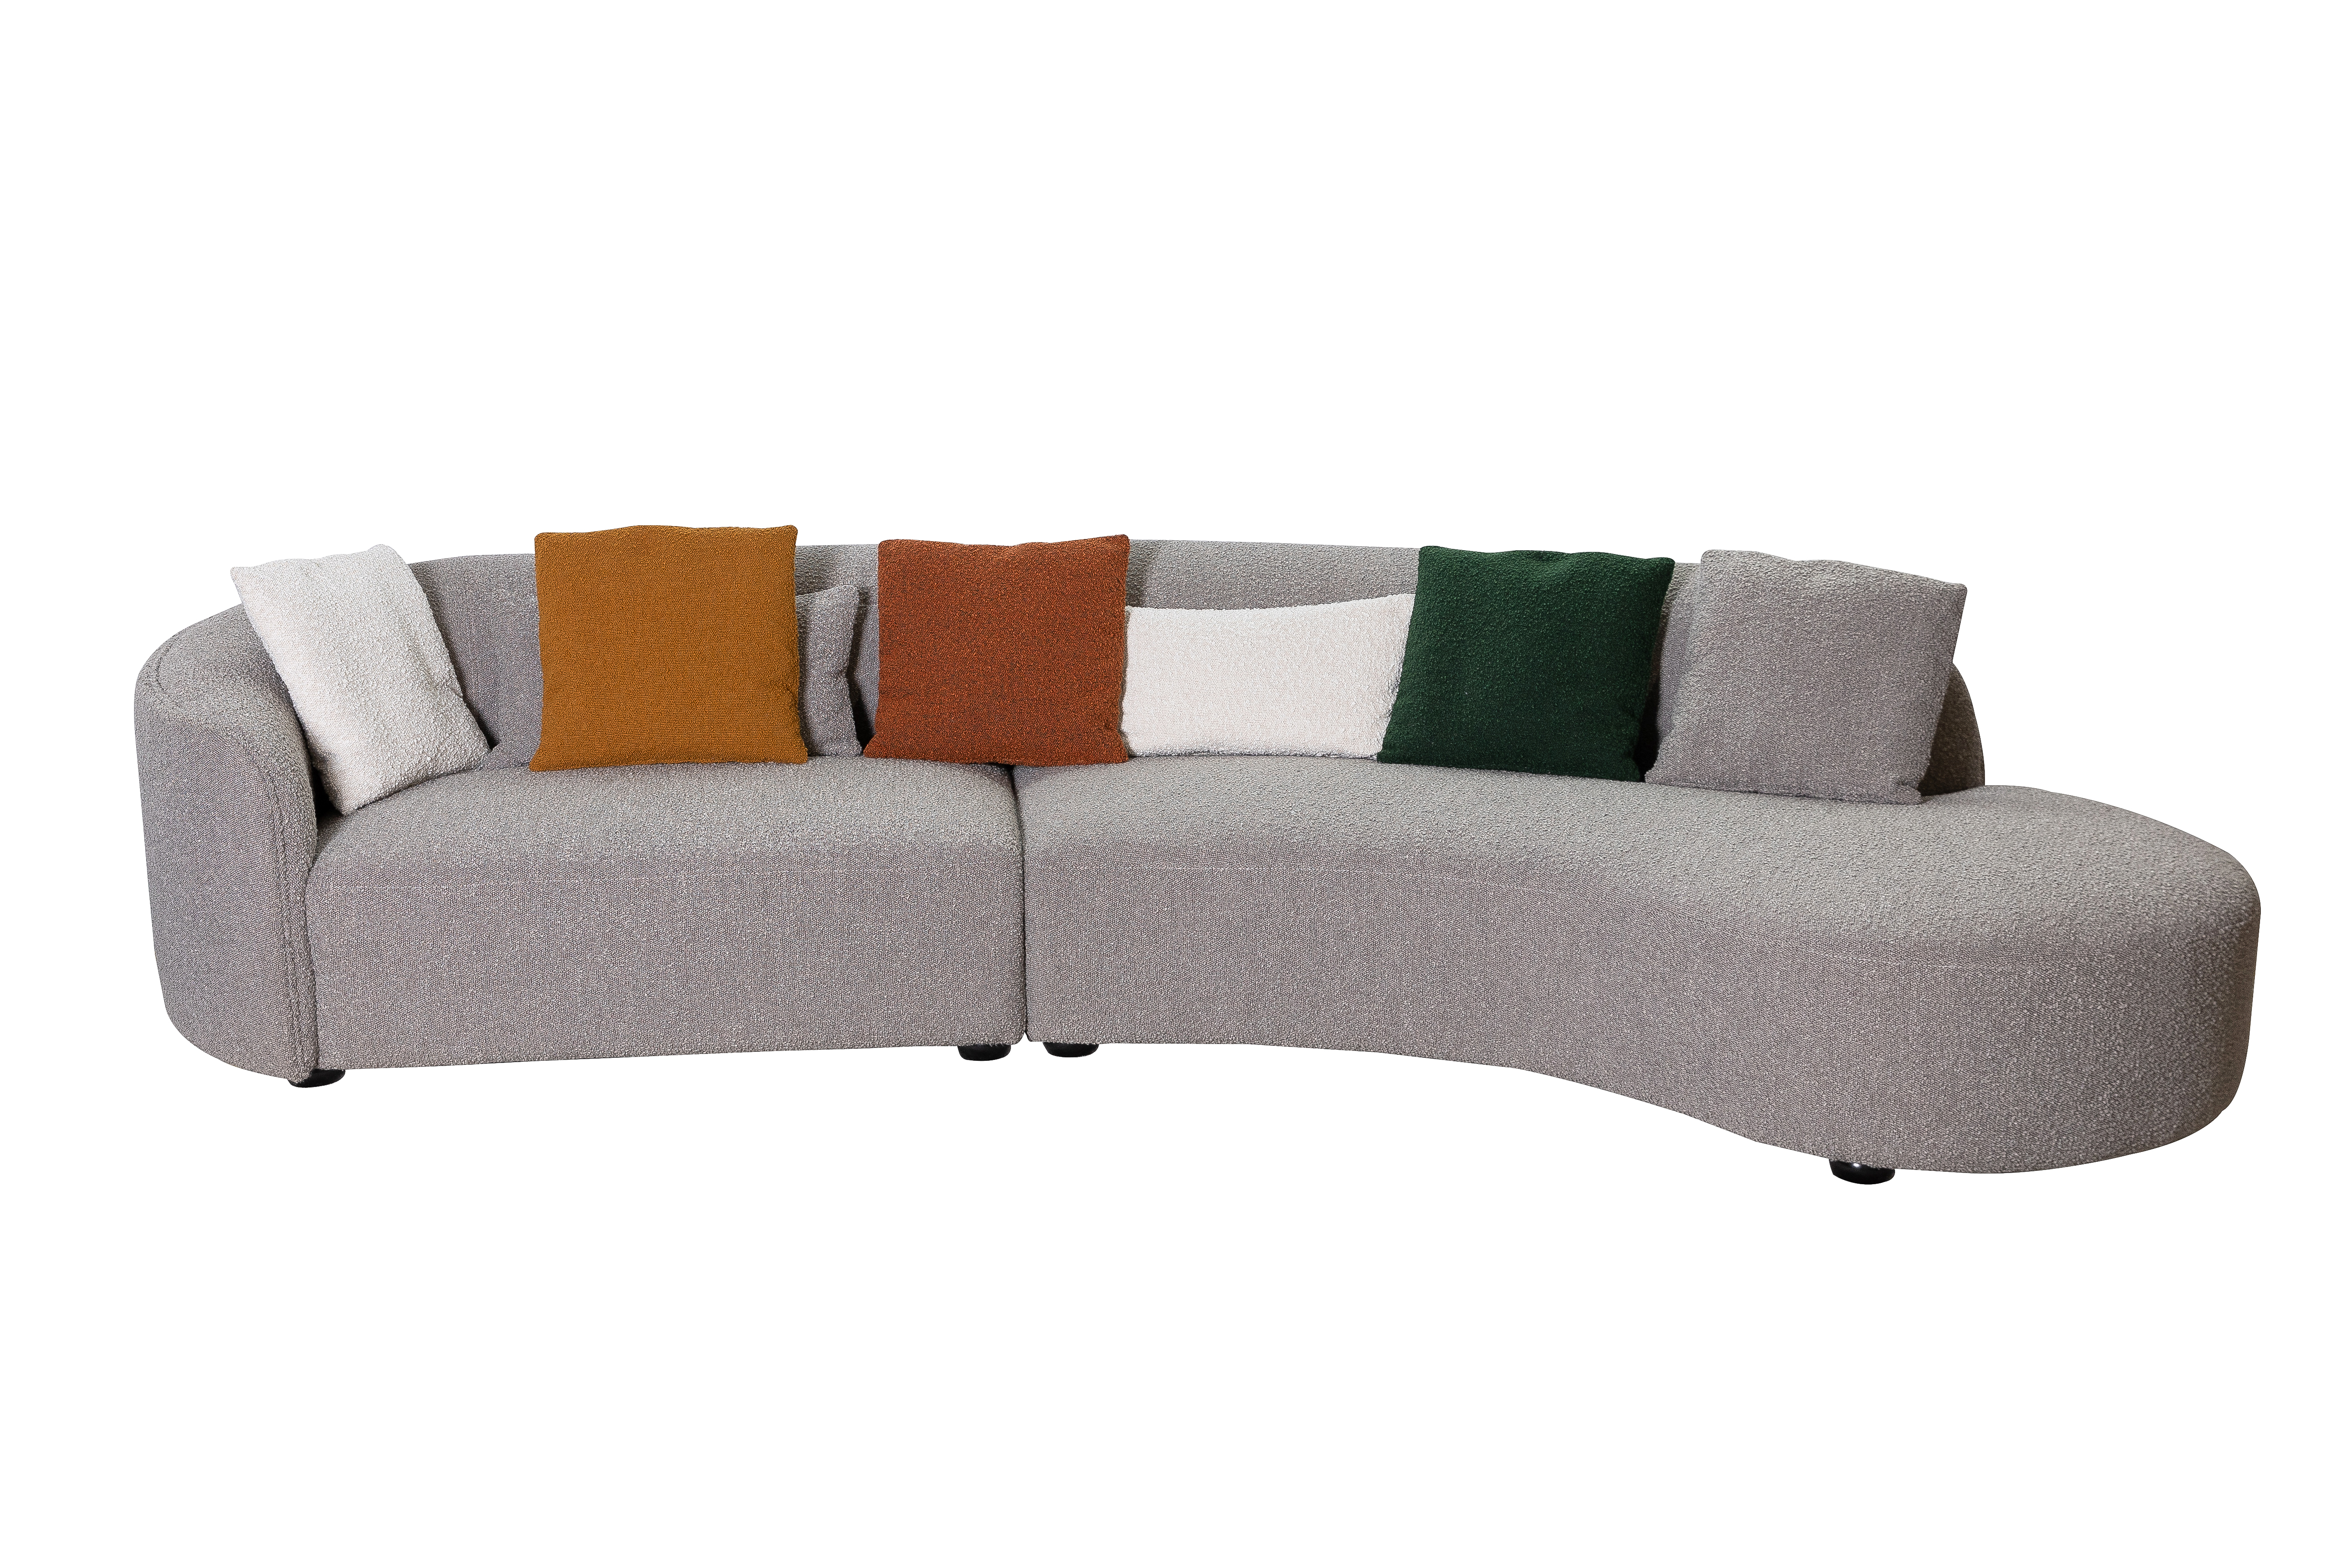 Irregular Sofa for home apartment